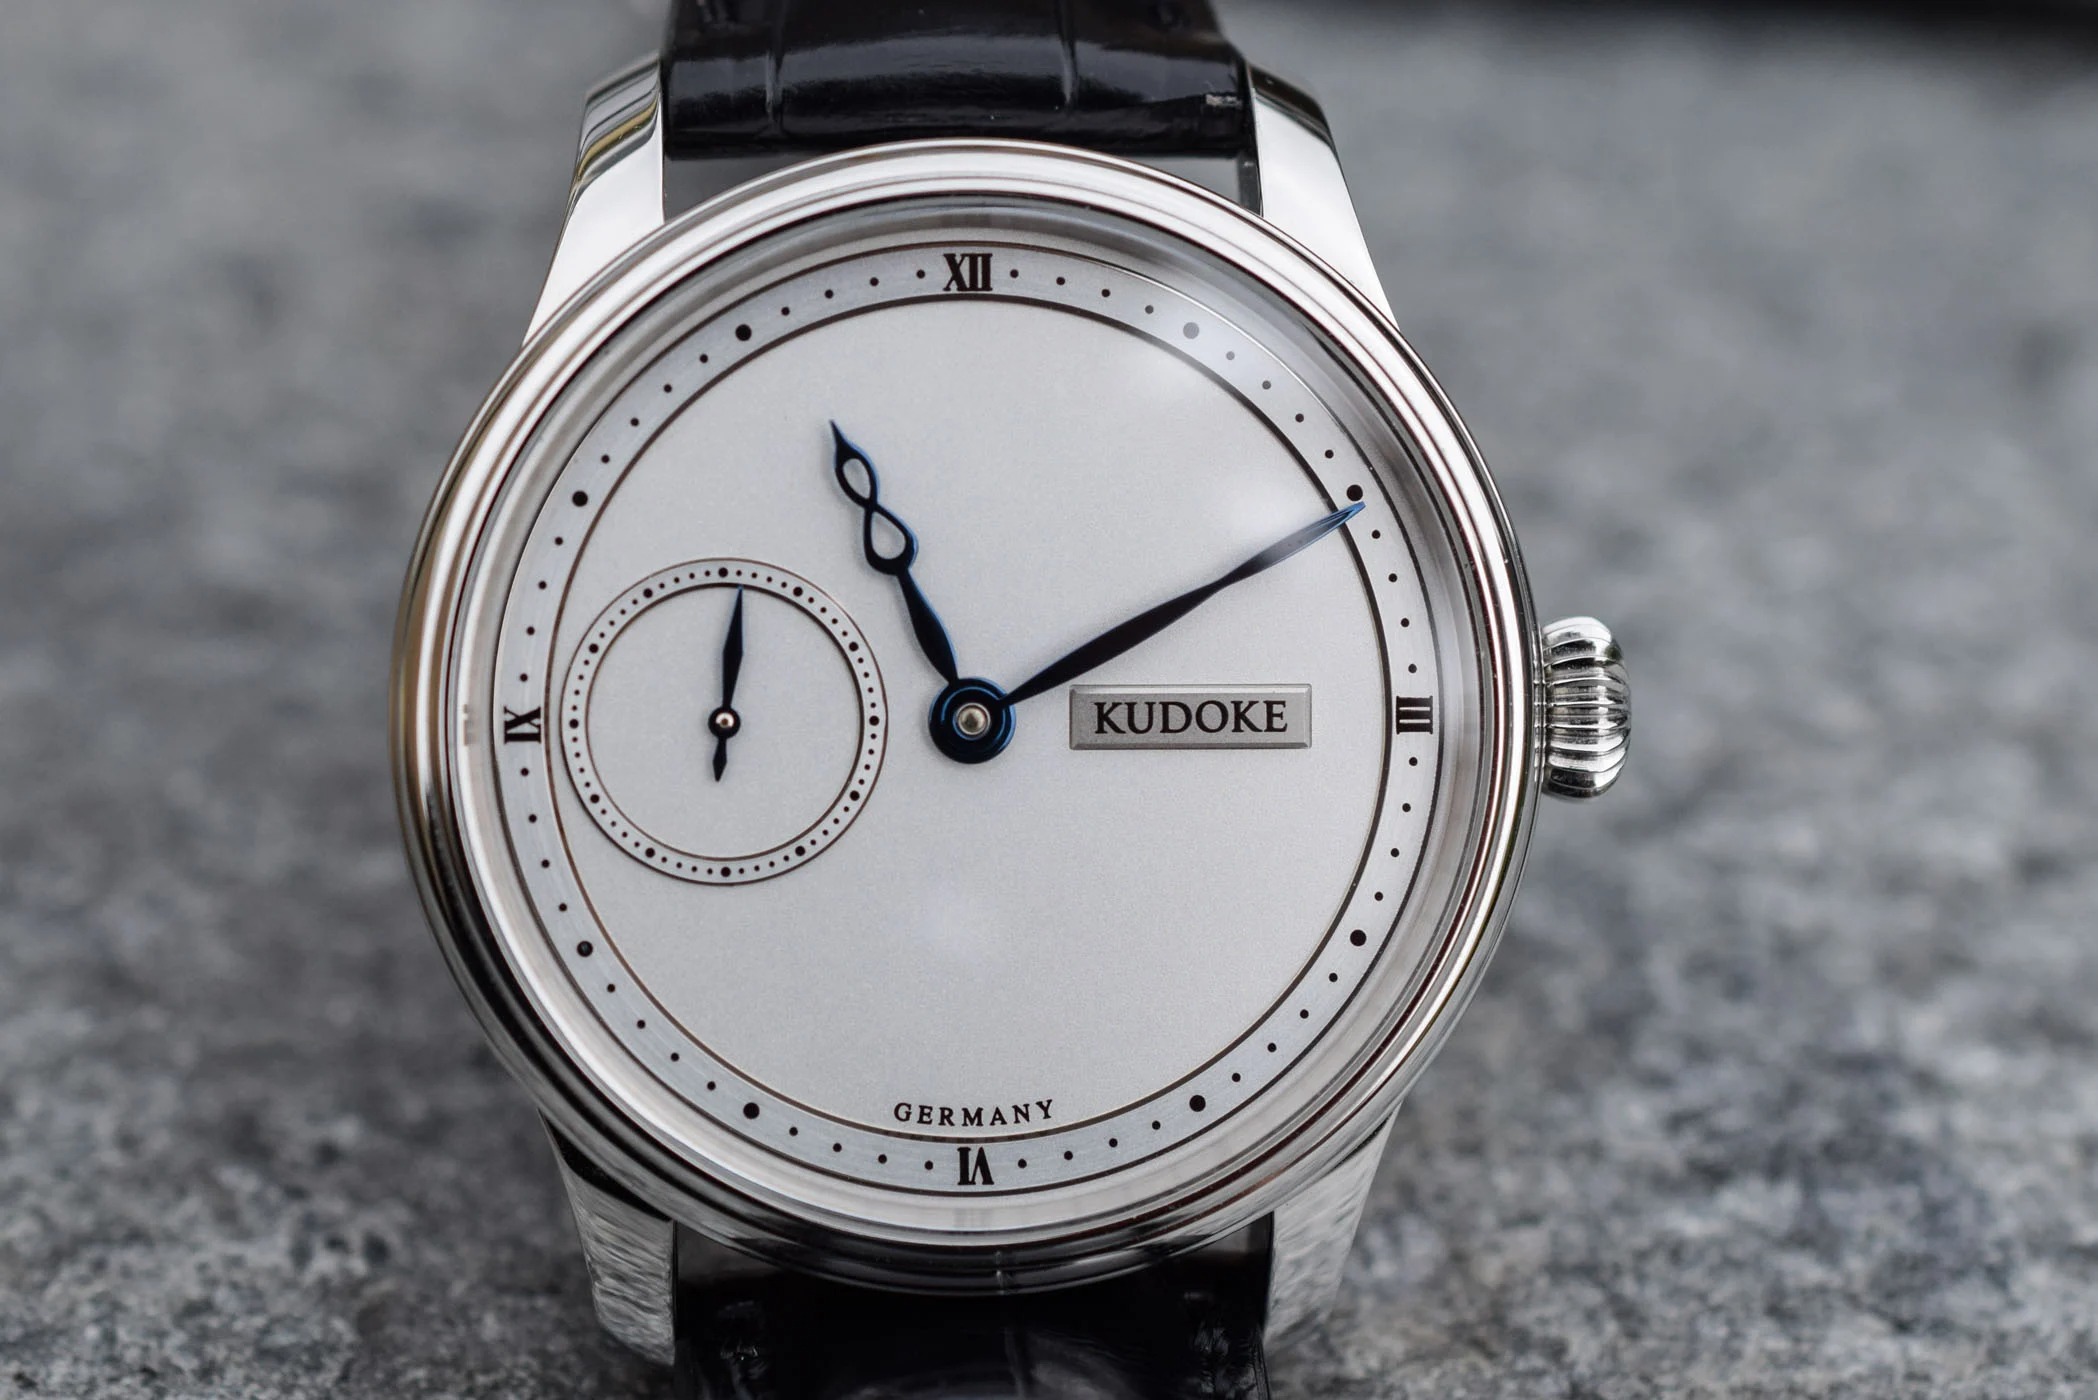 Kudoke HANDwerk 1 - Một chiếc đồng hồ thủ công điển hình của Đức